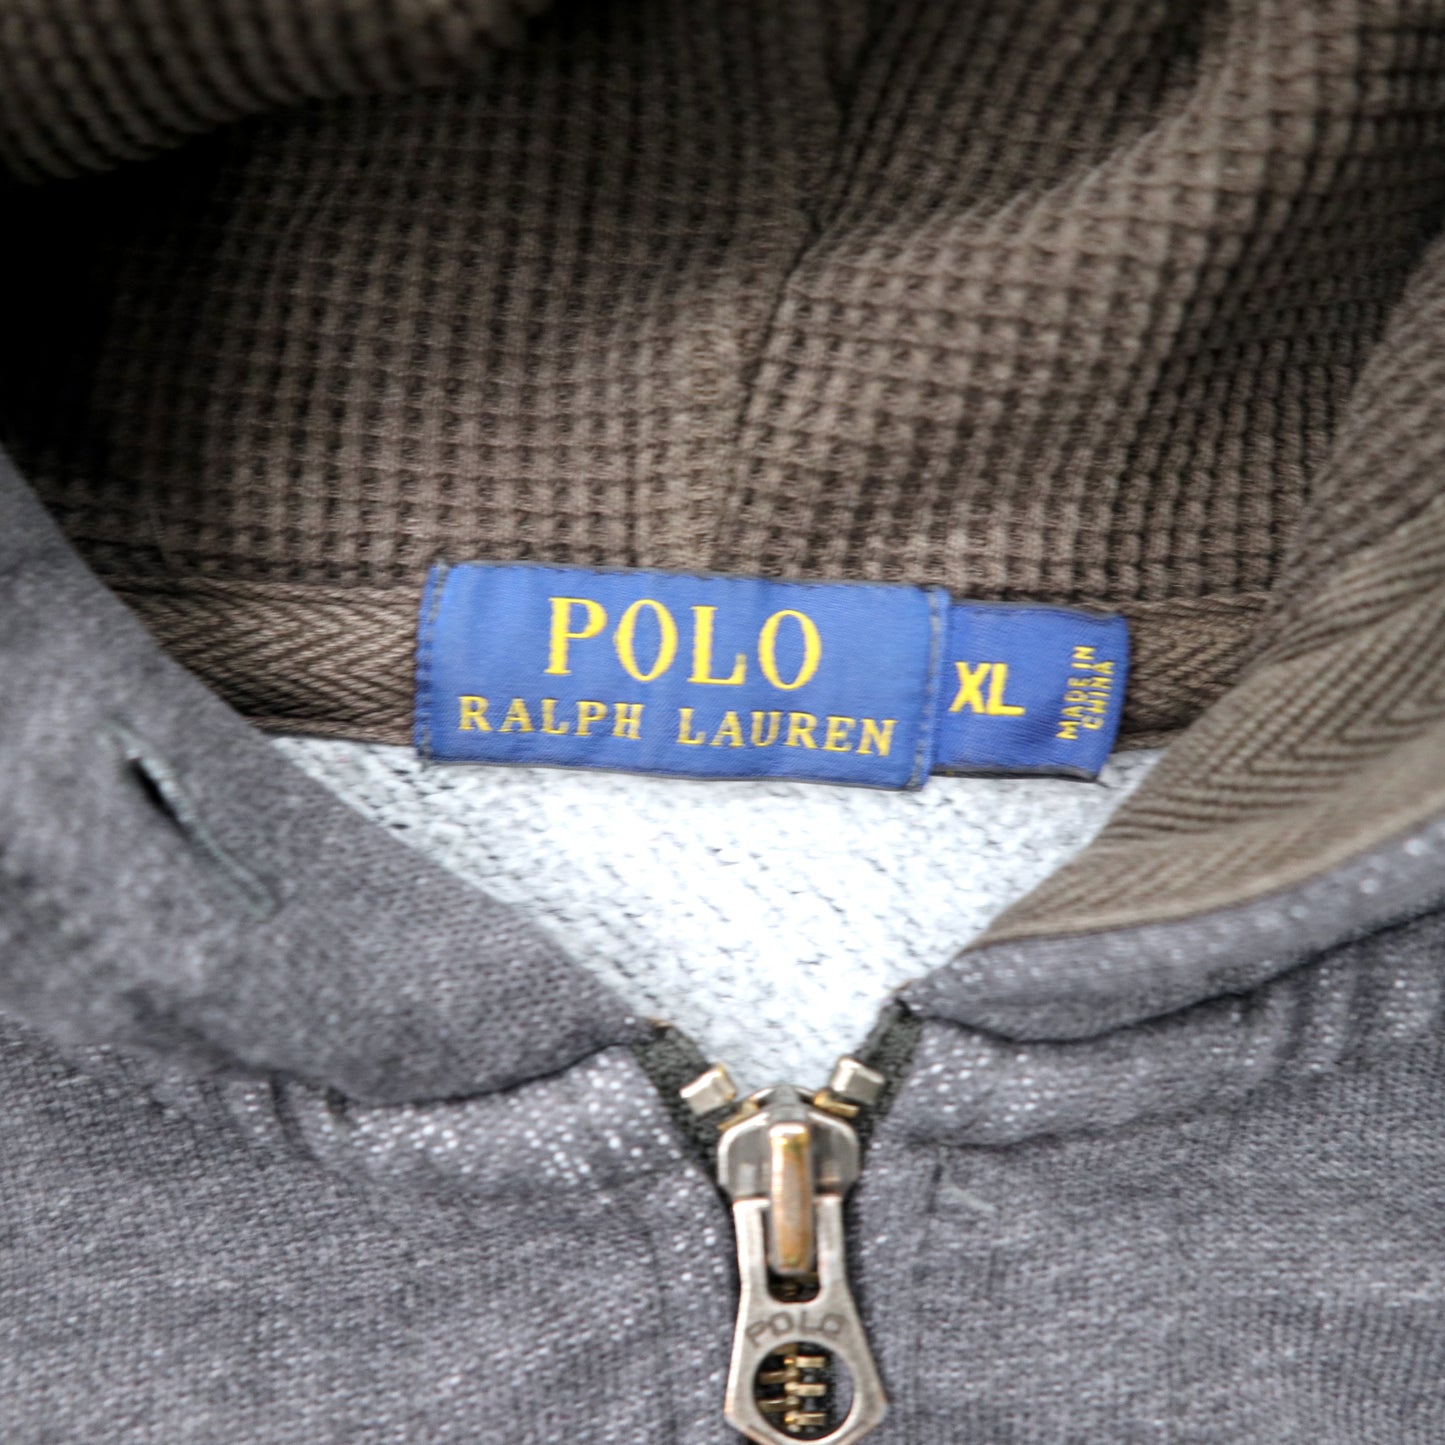 POLO RALPH LAUREN リバースウィーブ フルジップパーカー XL グレー コットン 裏起毛 スモールポニー刺繍